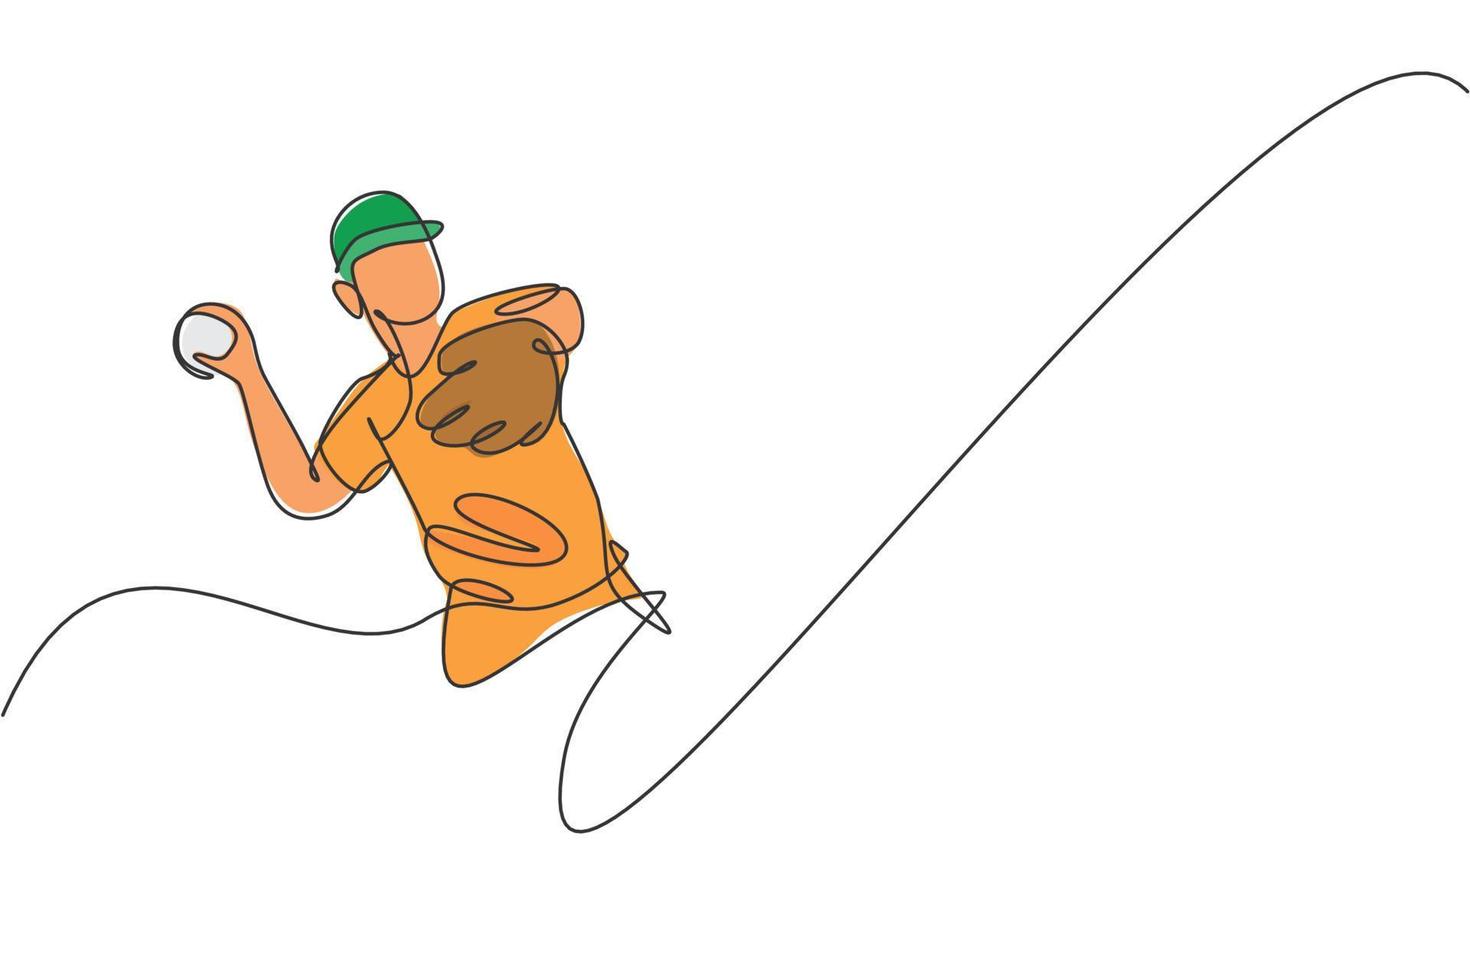 un jugador de béisbol joven enérgico de dibujo de una sola línea lanza la ilustración de vector gráfico de bola de velocidad. concepto de entrenamiento deportivo. diseño moderno de dibujo de línea continua para la pancarta del torneo de béisbol